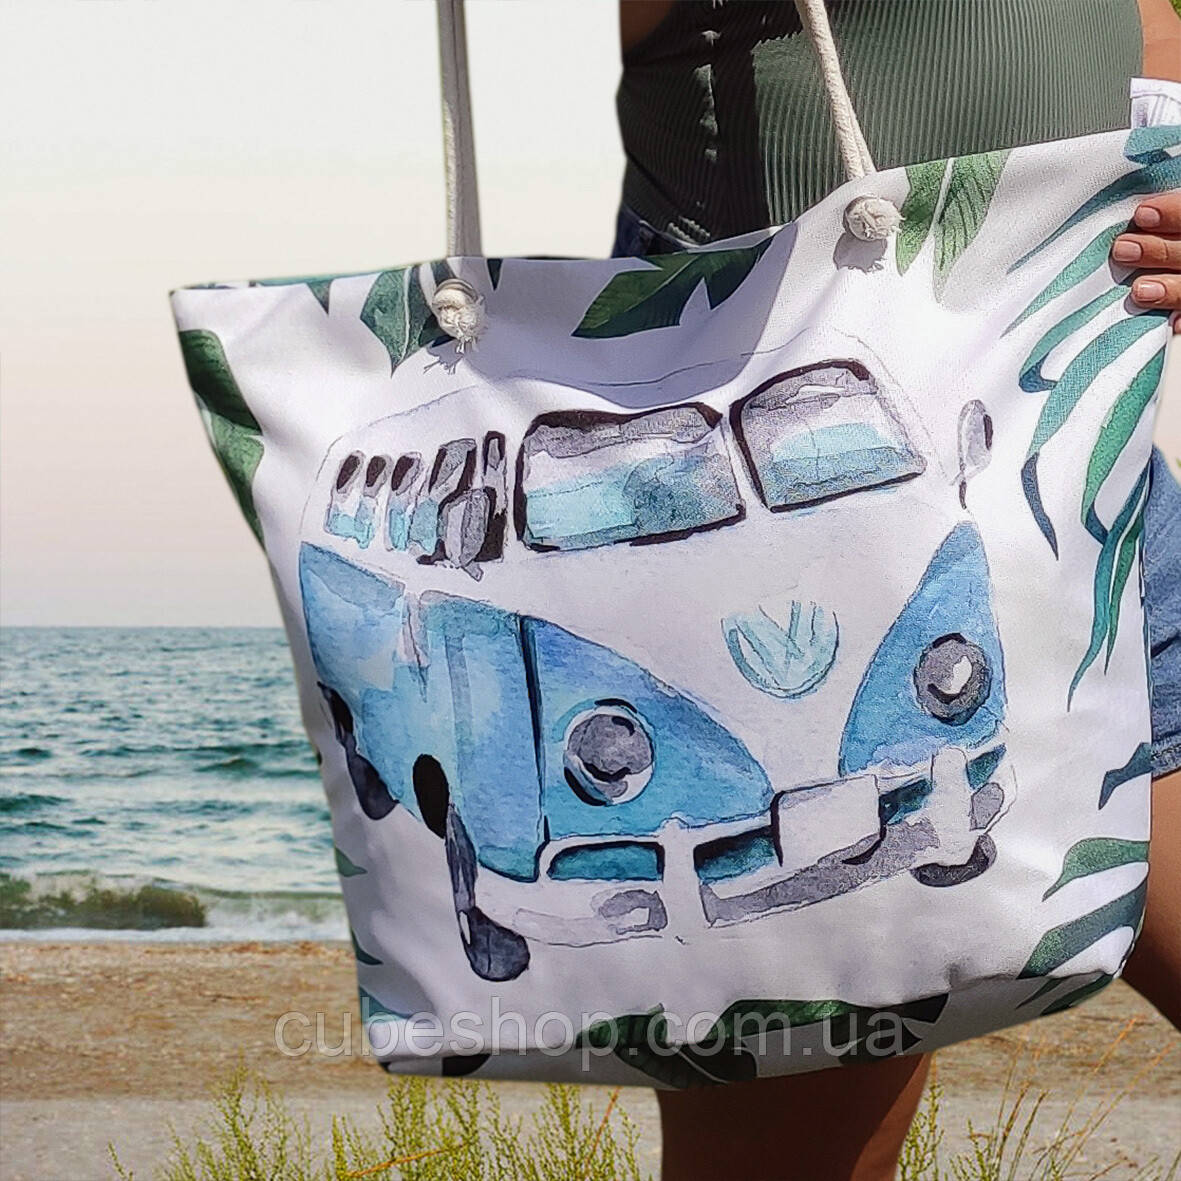 Пляжная сумка Malibu "Бирюзовый Volkswagen хиппимобиль"